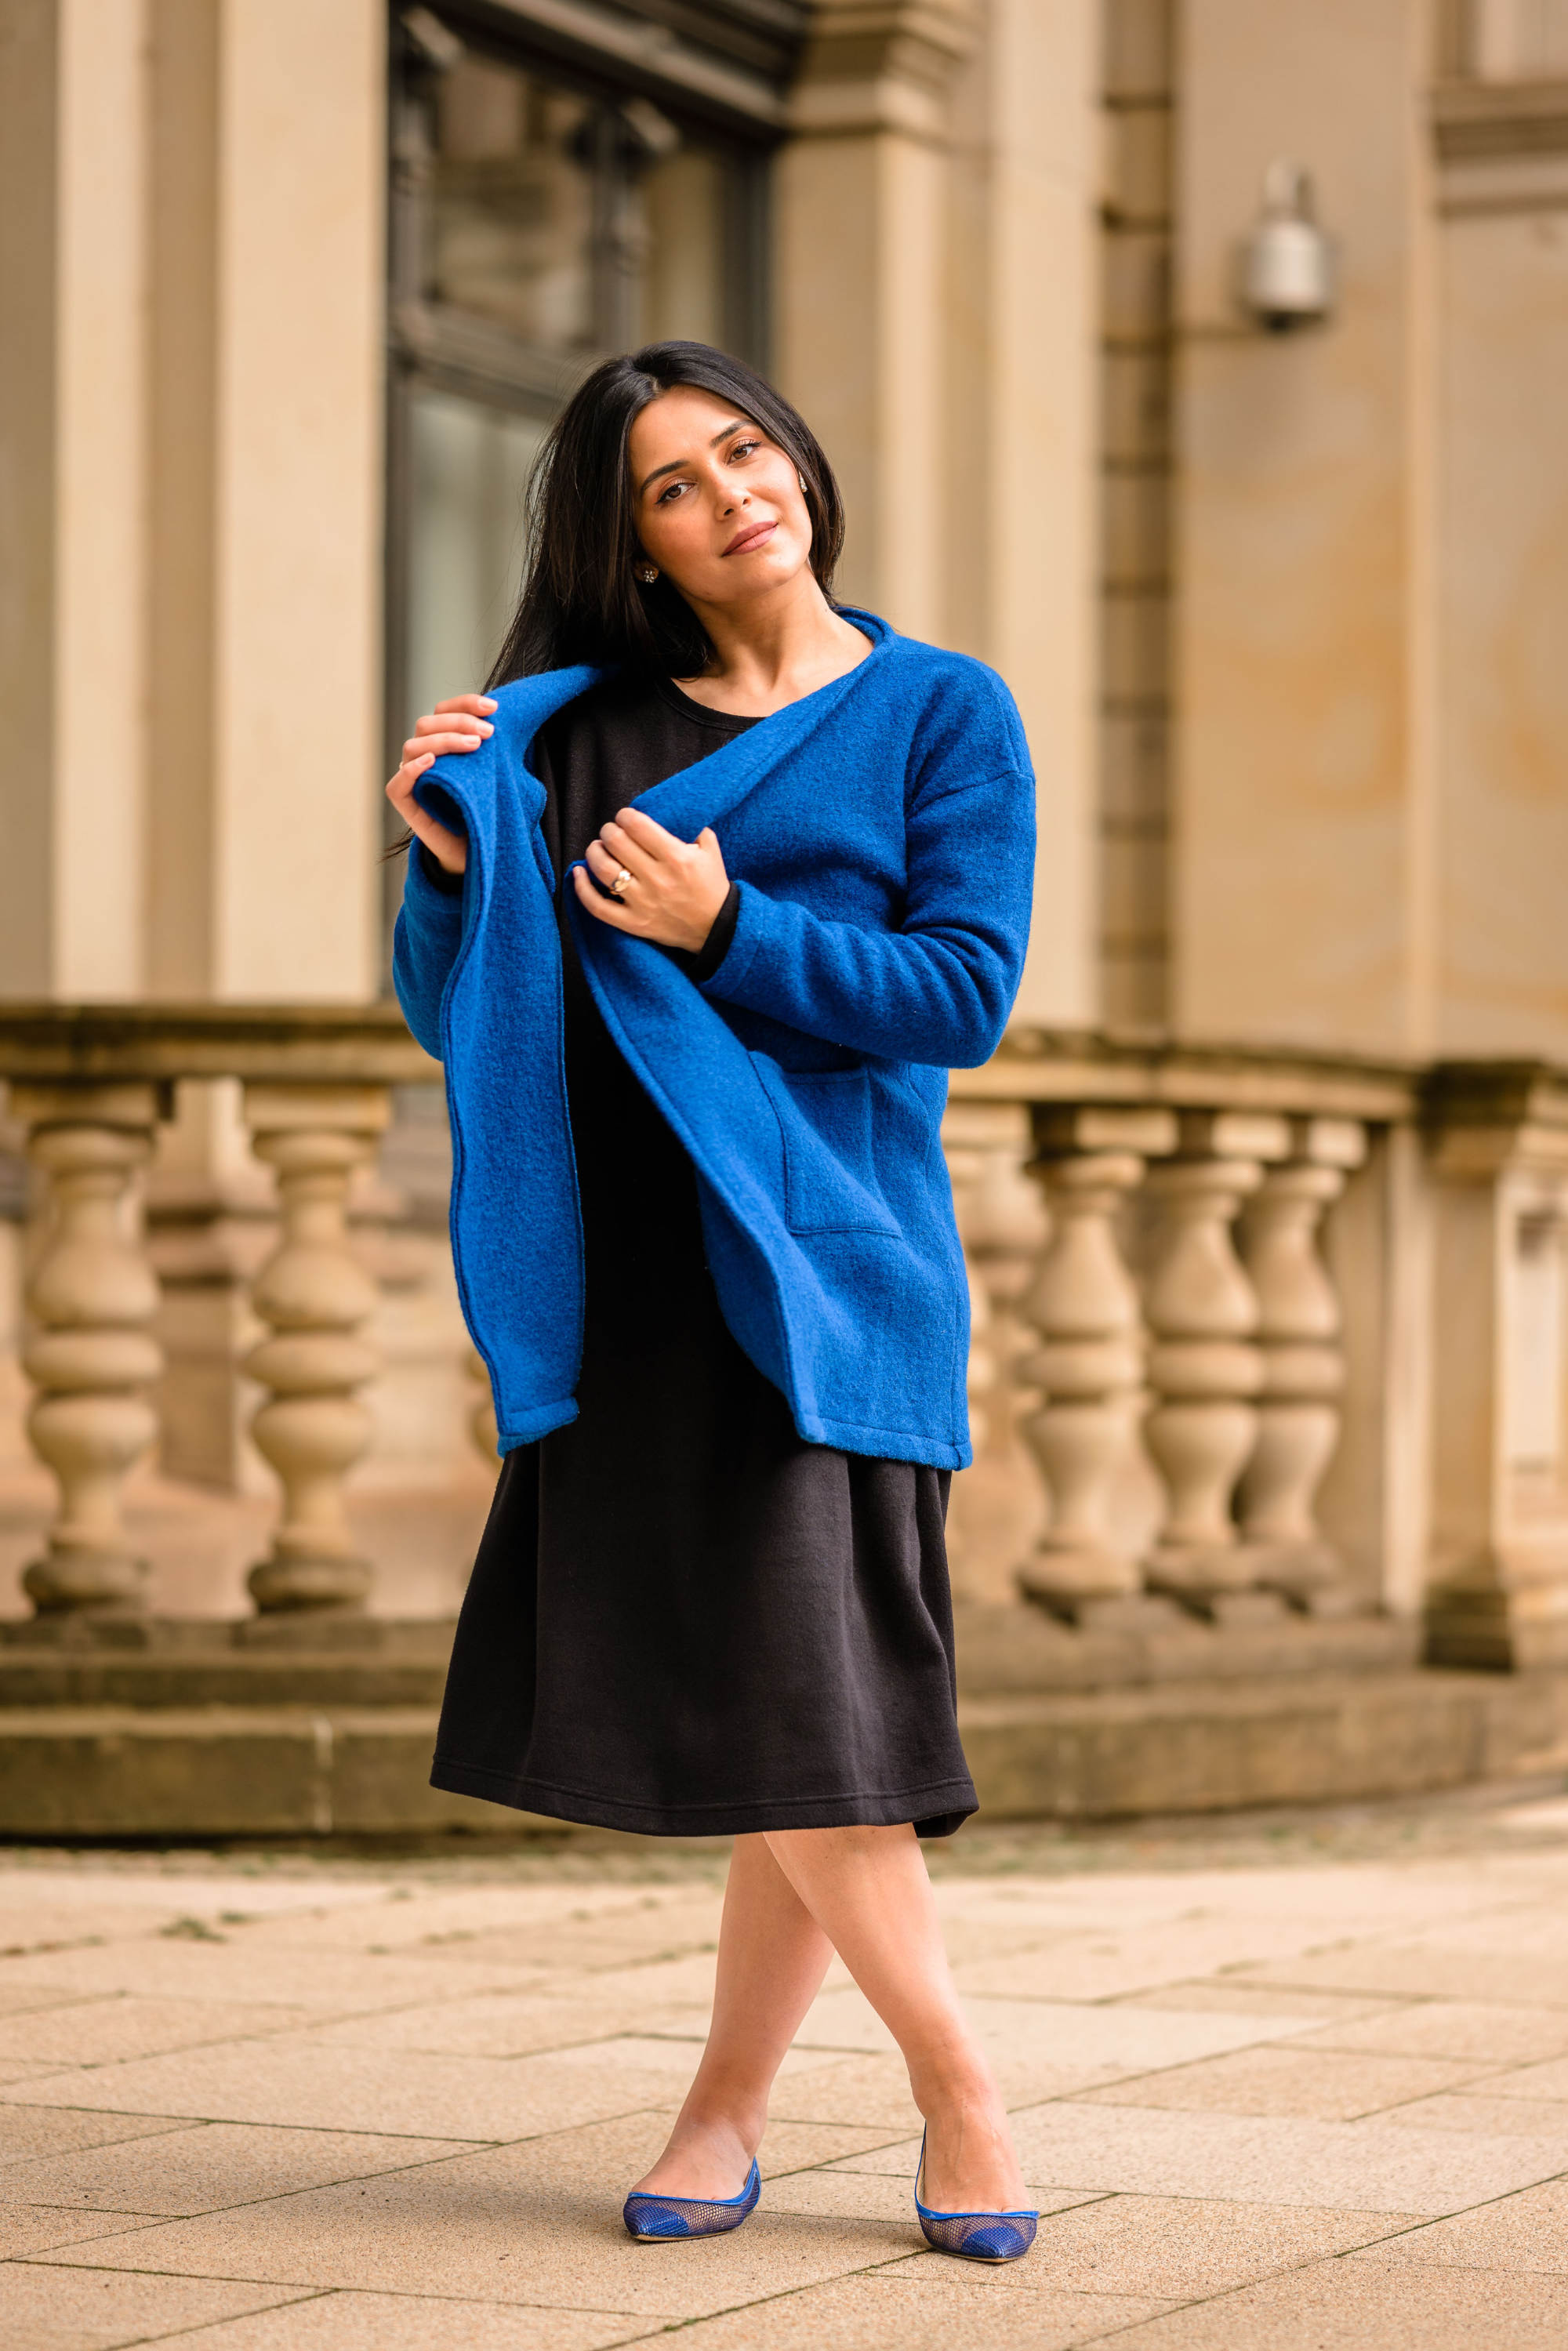 Lale Temori trägt eine Walkloden-Jacke in der Farbe azurblau.